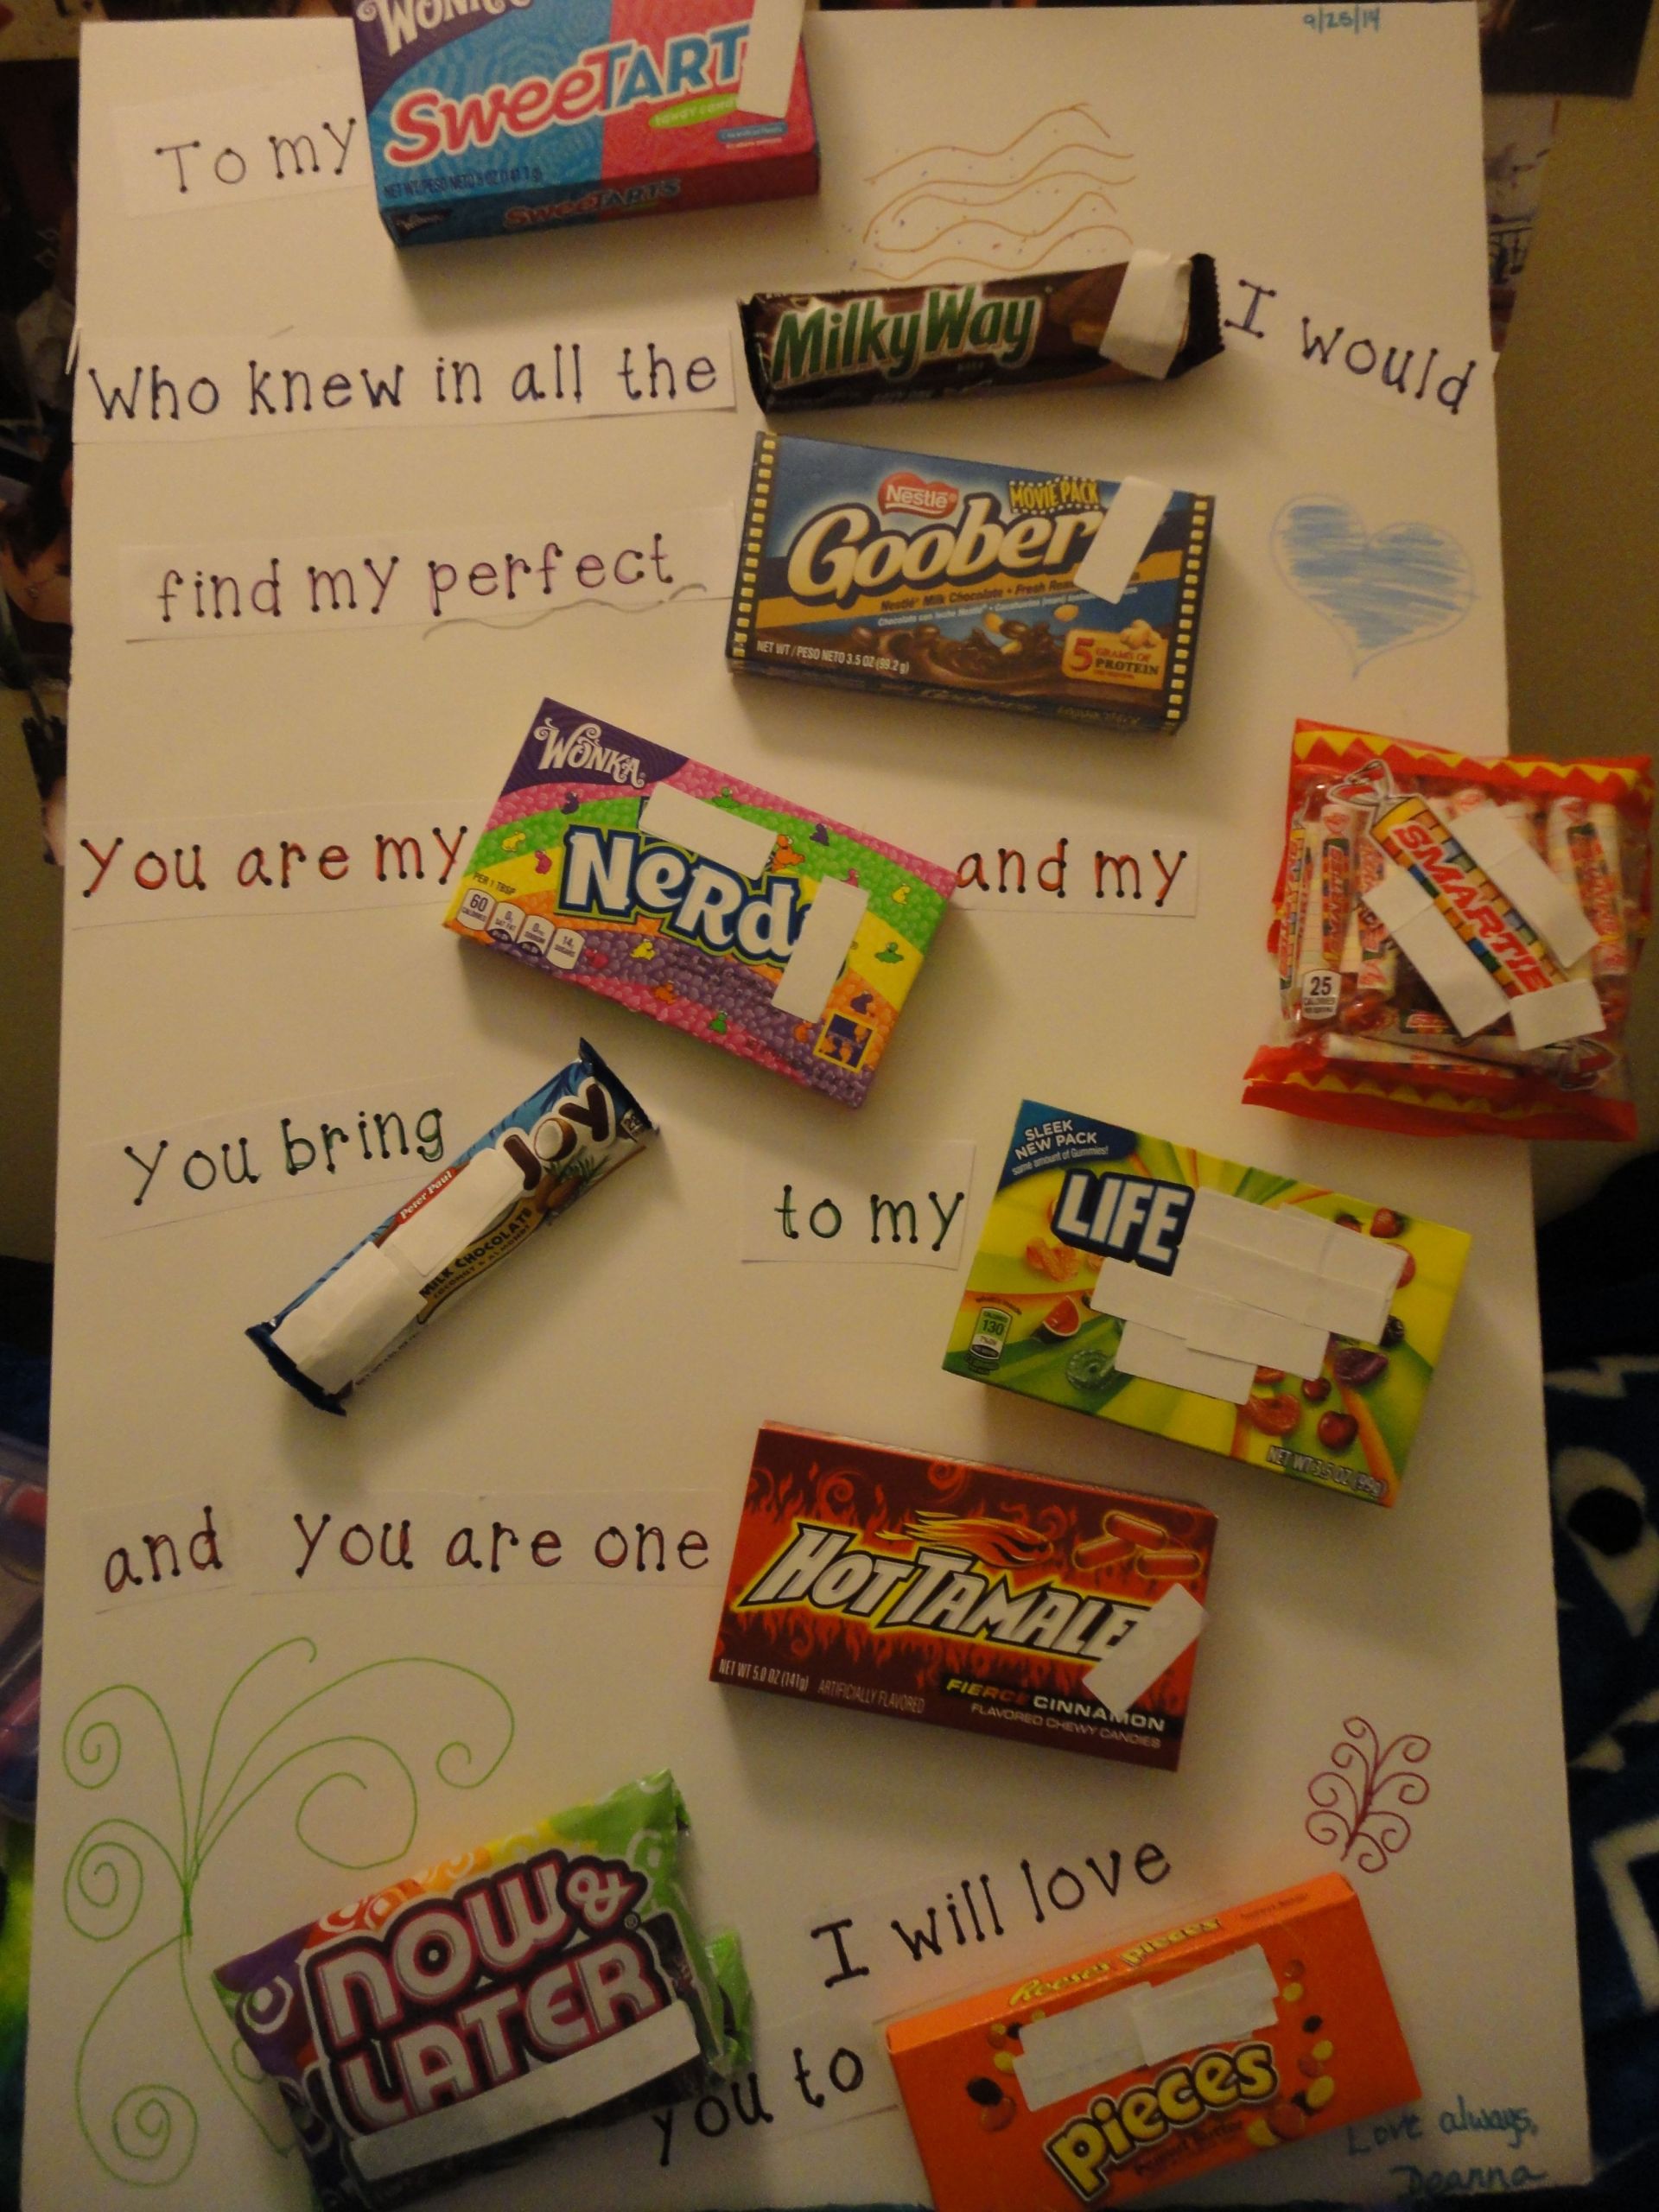 22Nd Birthday Gift Ideas For Boyfriend
 Boyfriend s 22nd birthday present boyfriend love